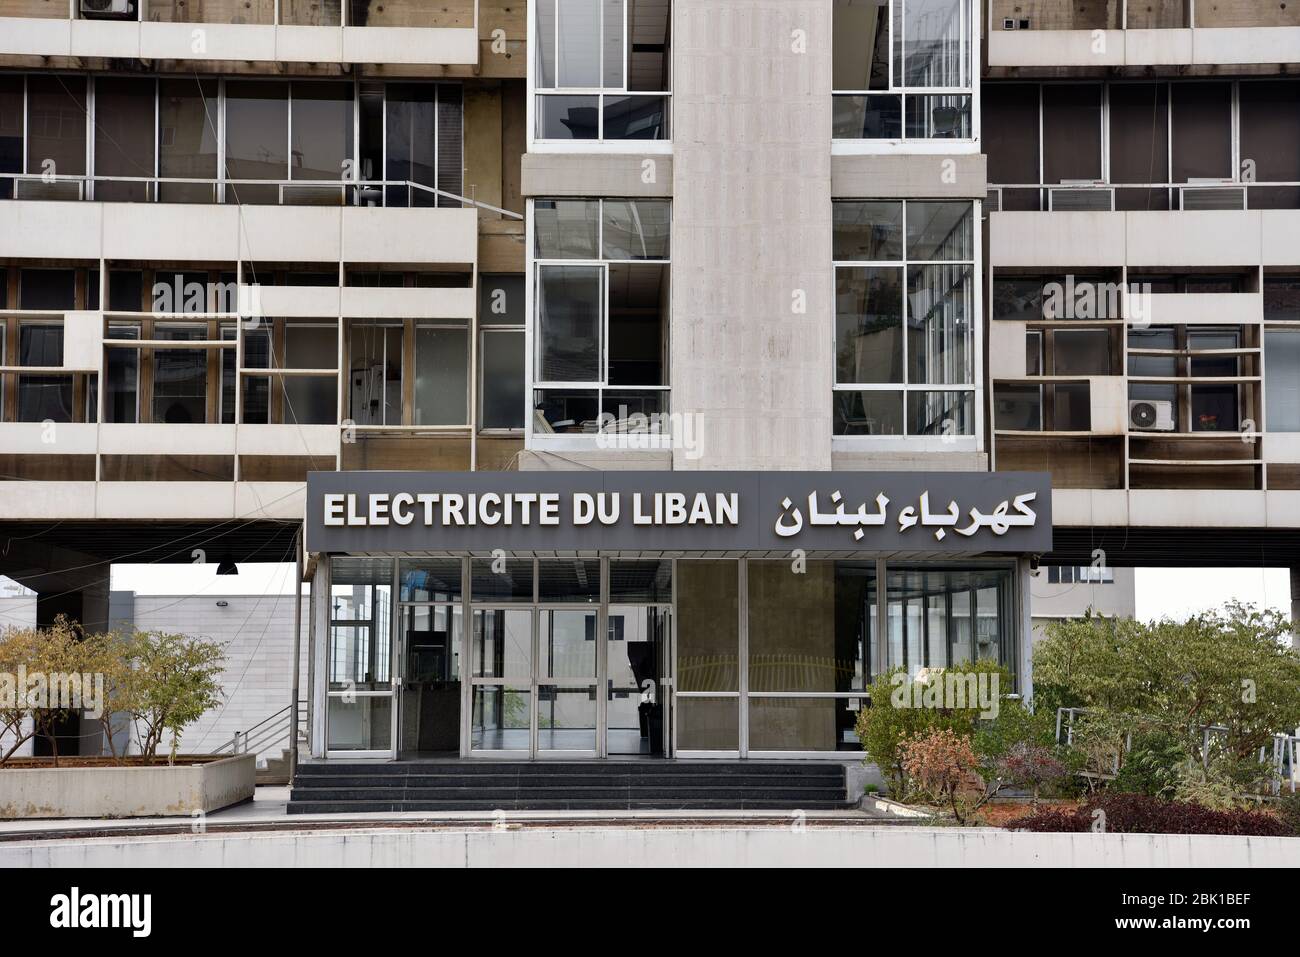 Fassade Des Electricite Du Liban Edl Gebaudes Ost Beirut Libanon Stockfotografie Alamy